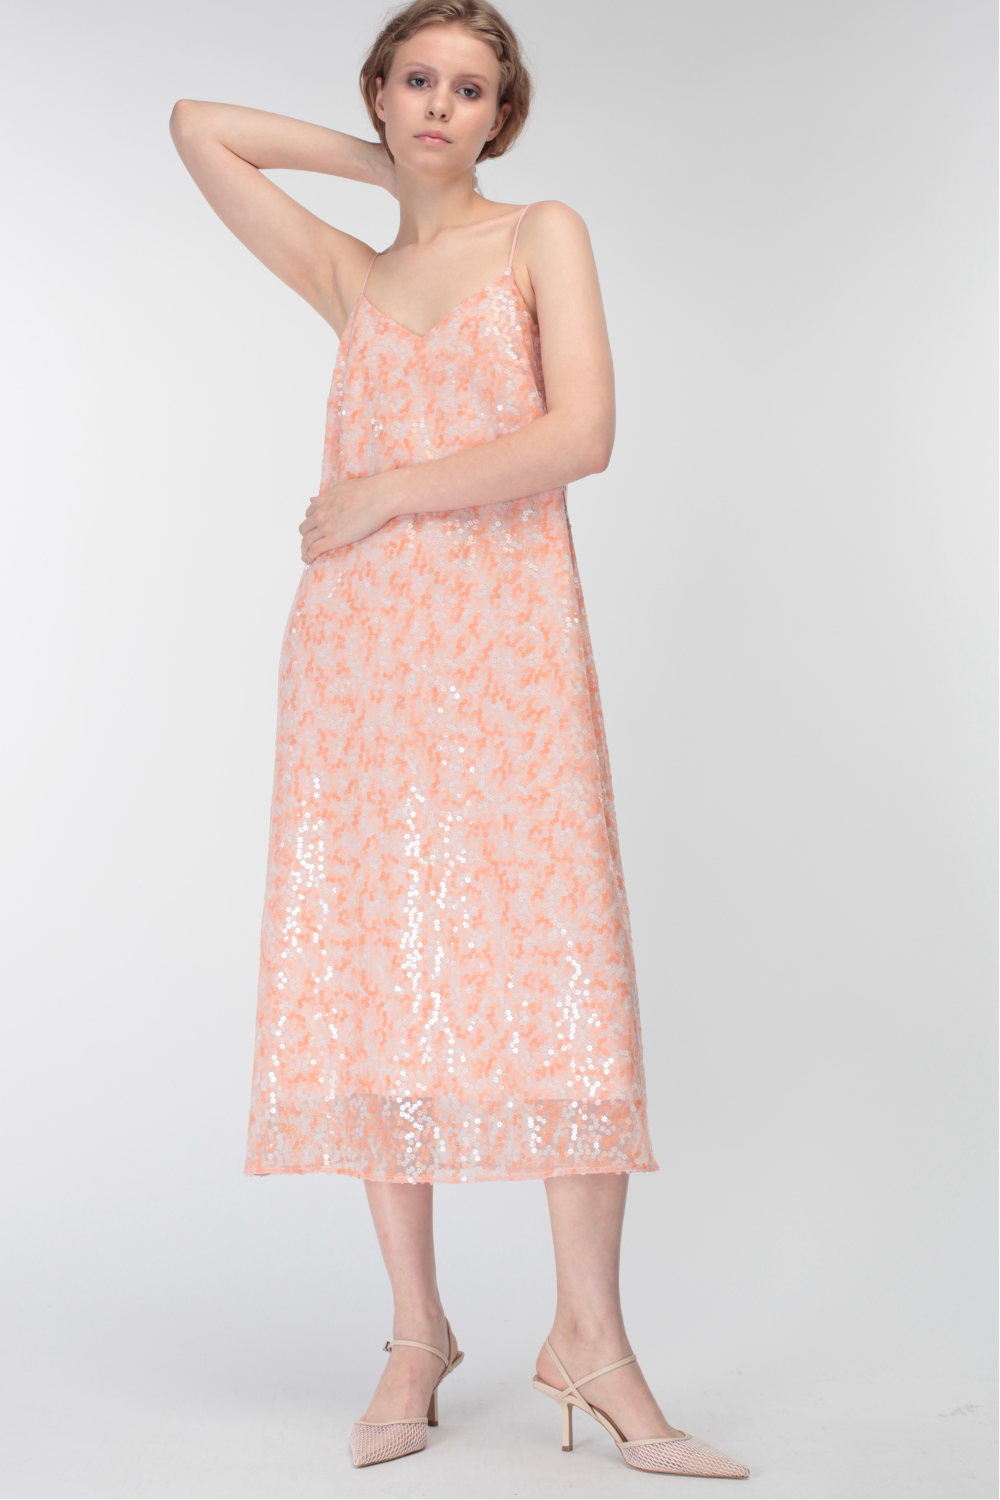 Šaty s tenkými ramínky s flitry, broskvový (MissSecret) DR-031-pink